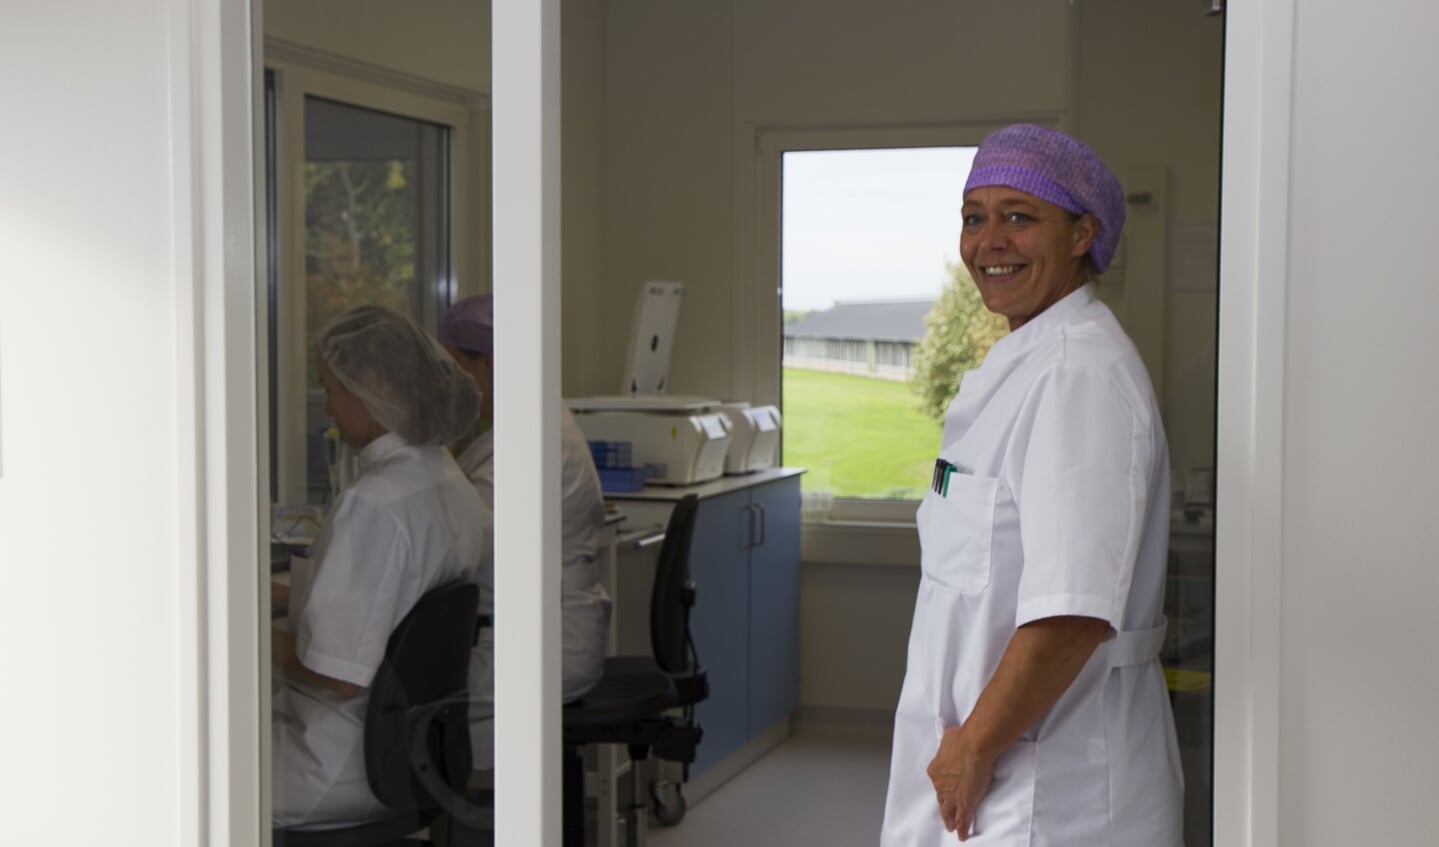 Embryologe Janneke Brink in de deuropening van het vernieuwde laboratorium.